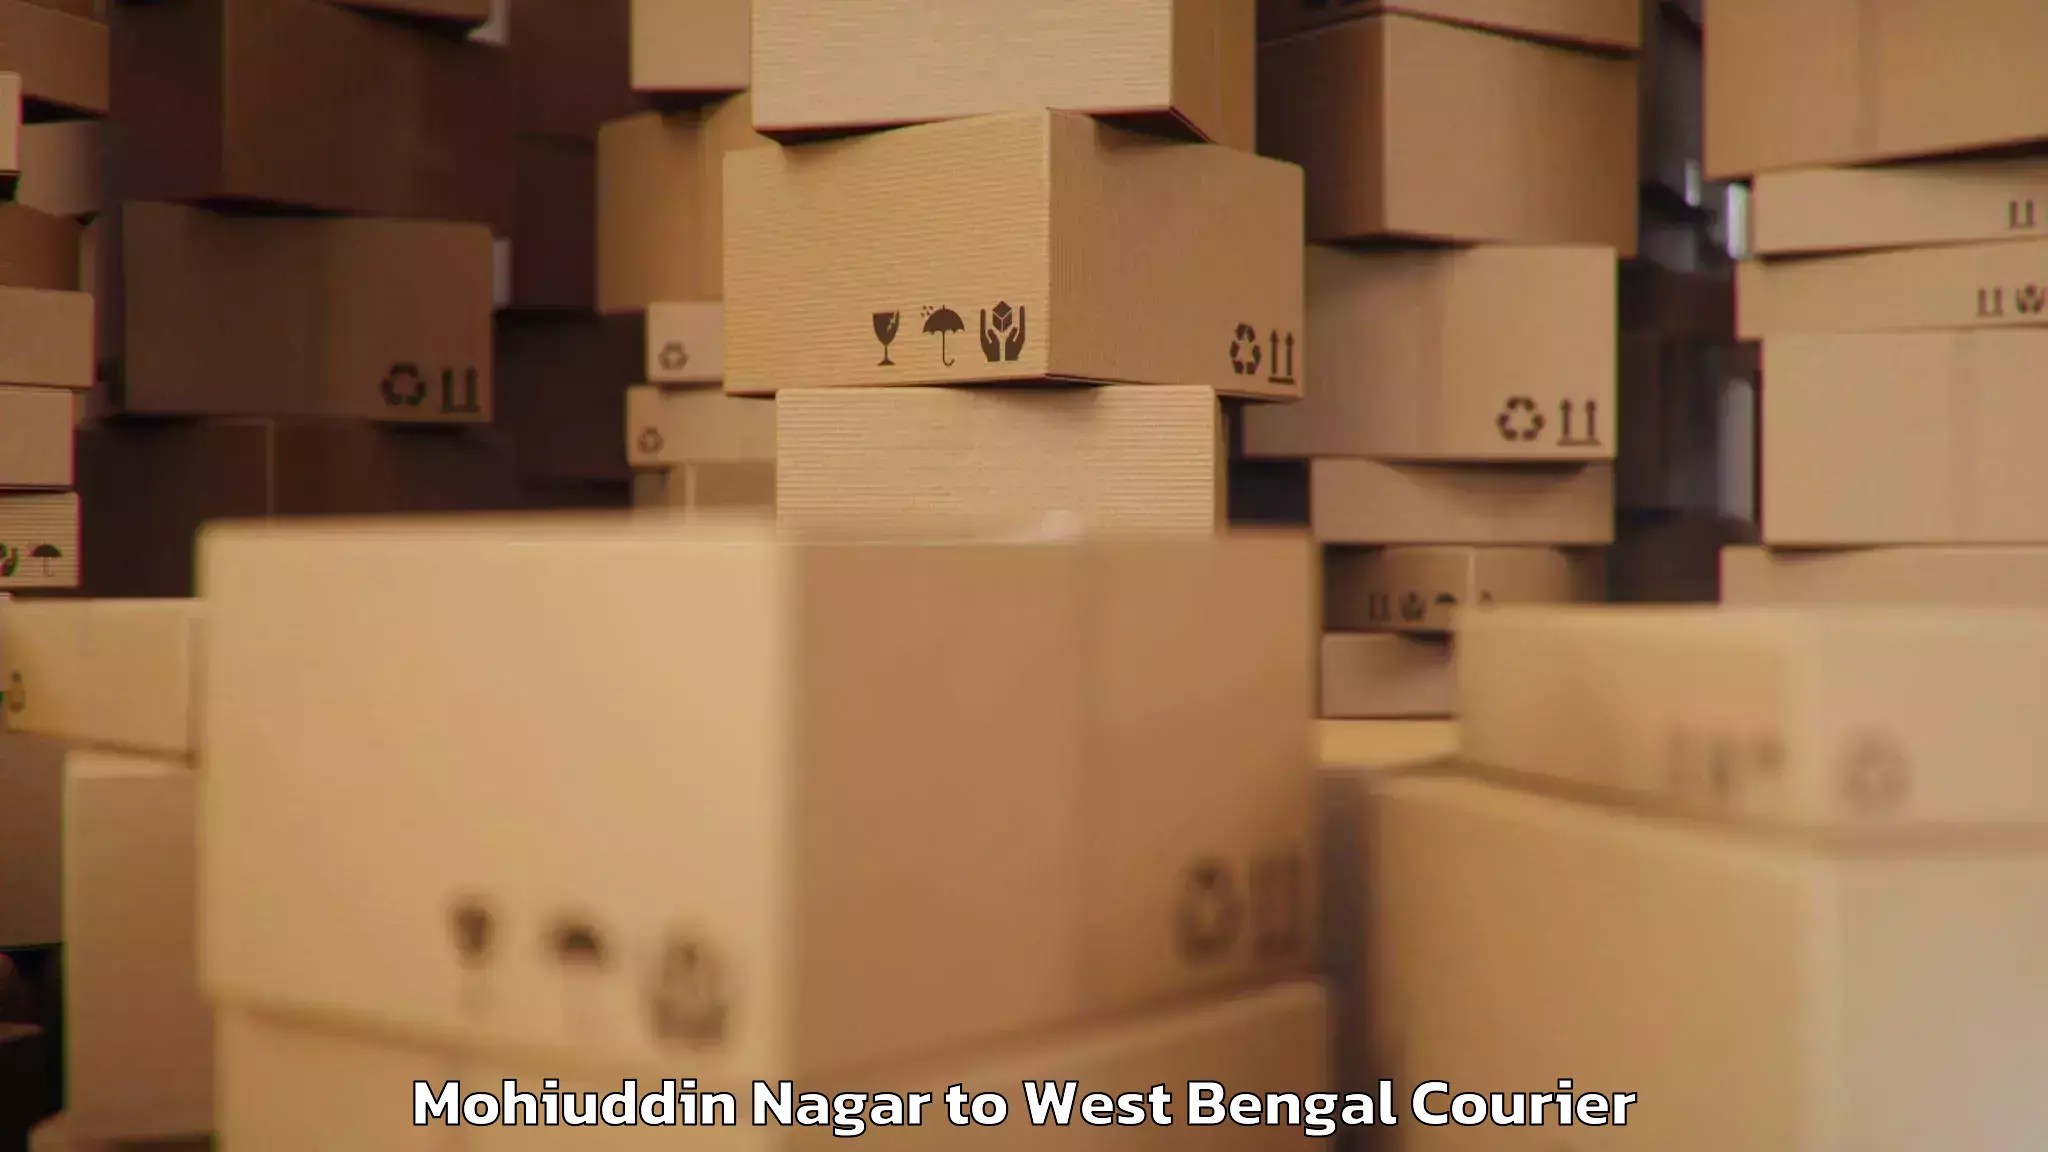 Baggage shipping optimization Mohiuddin Nagar to Haringhata